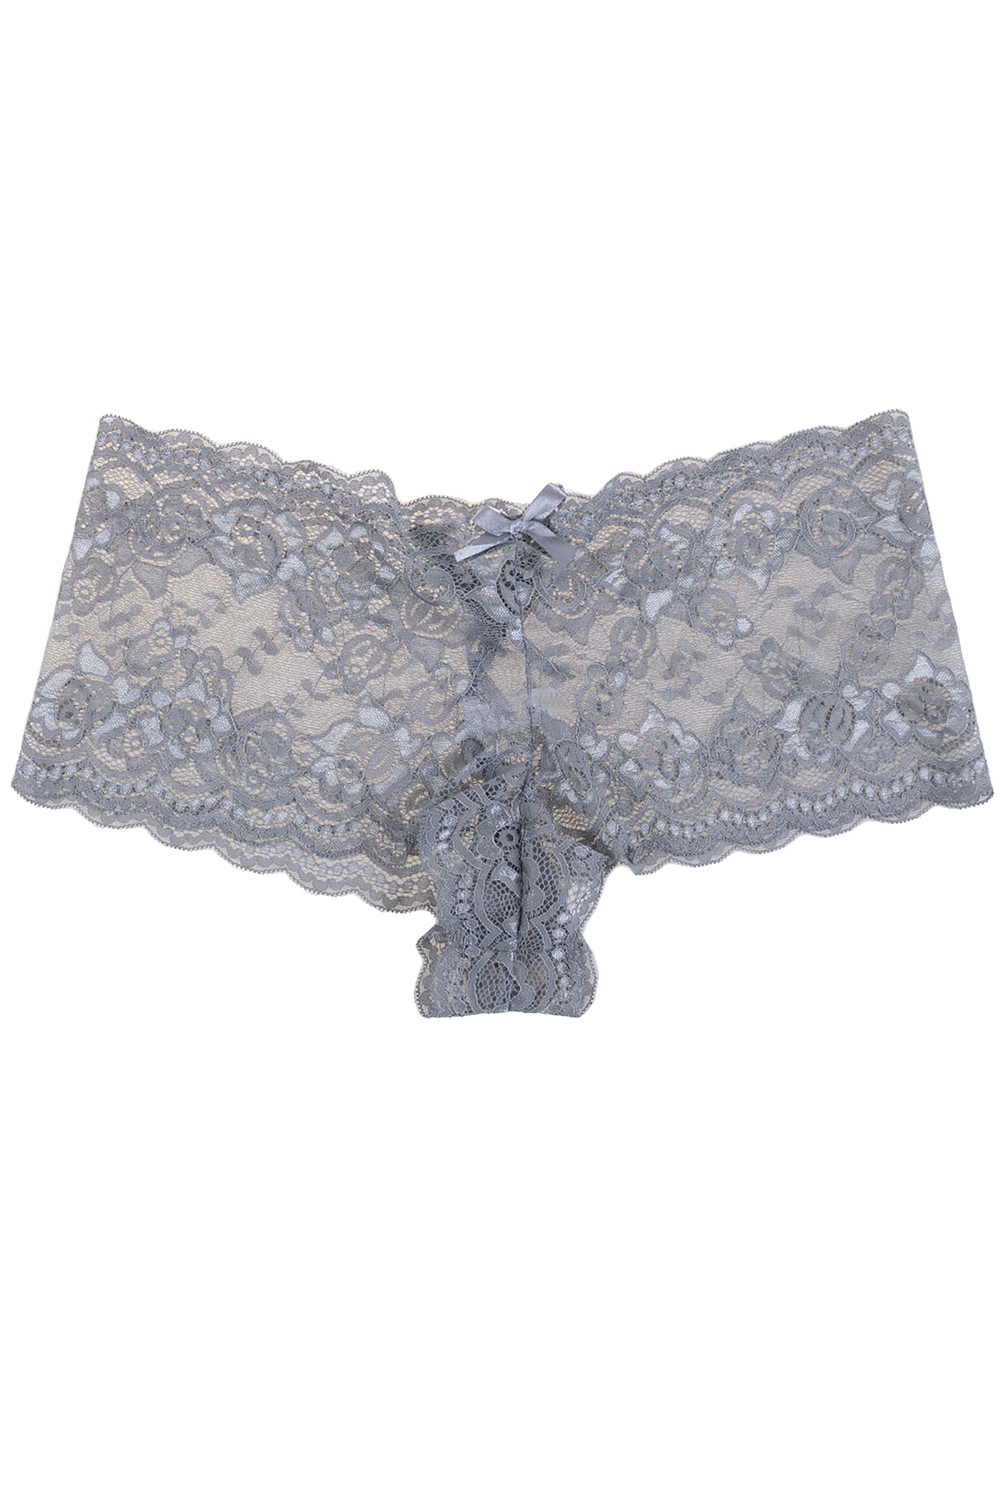 Plunging lace push-up demi bra set, grey - Plus Size. Colour: grey